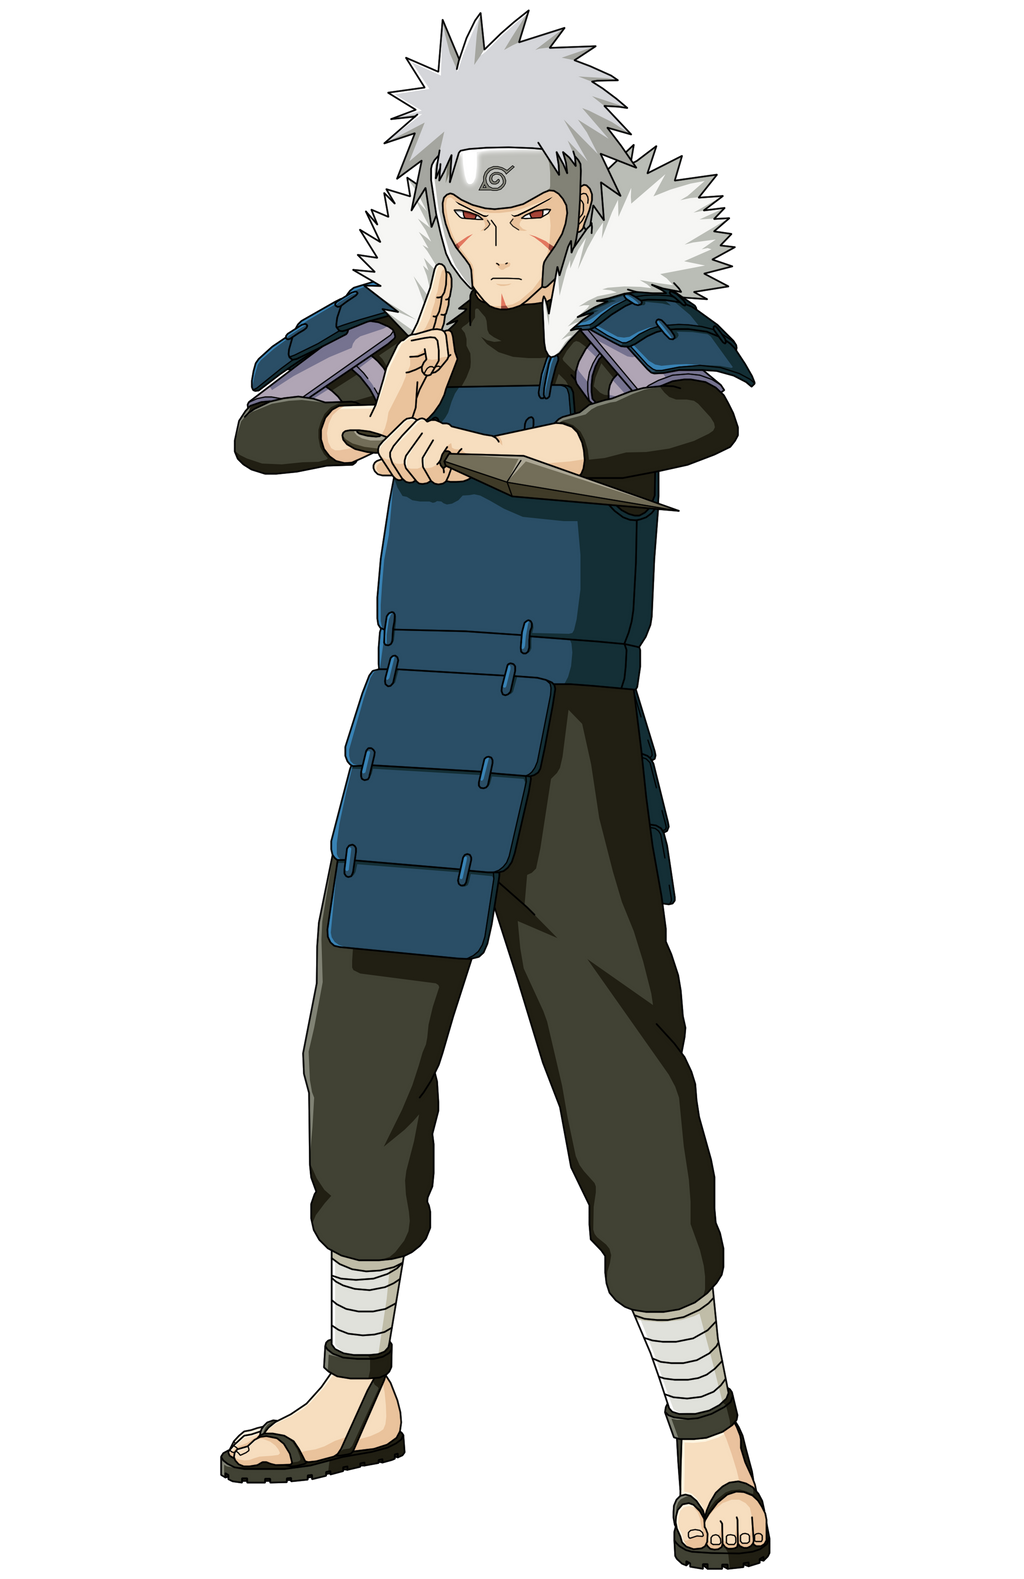 Hashirama Senju One Hokage  Naruto shippuden anime, Anime naruto, Naruto  shippuden sasuke